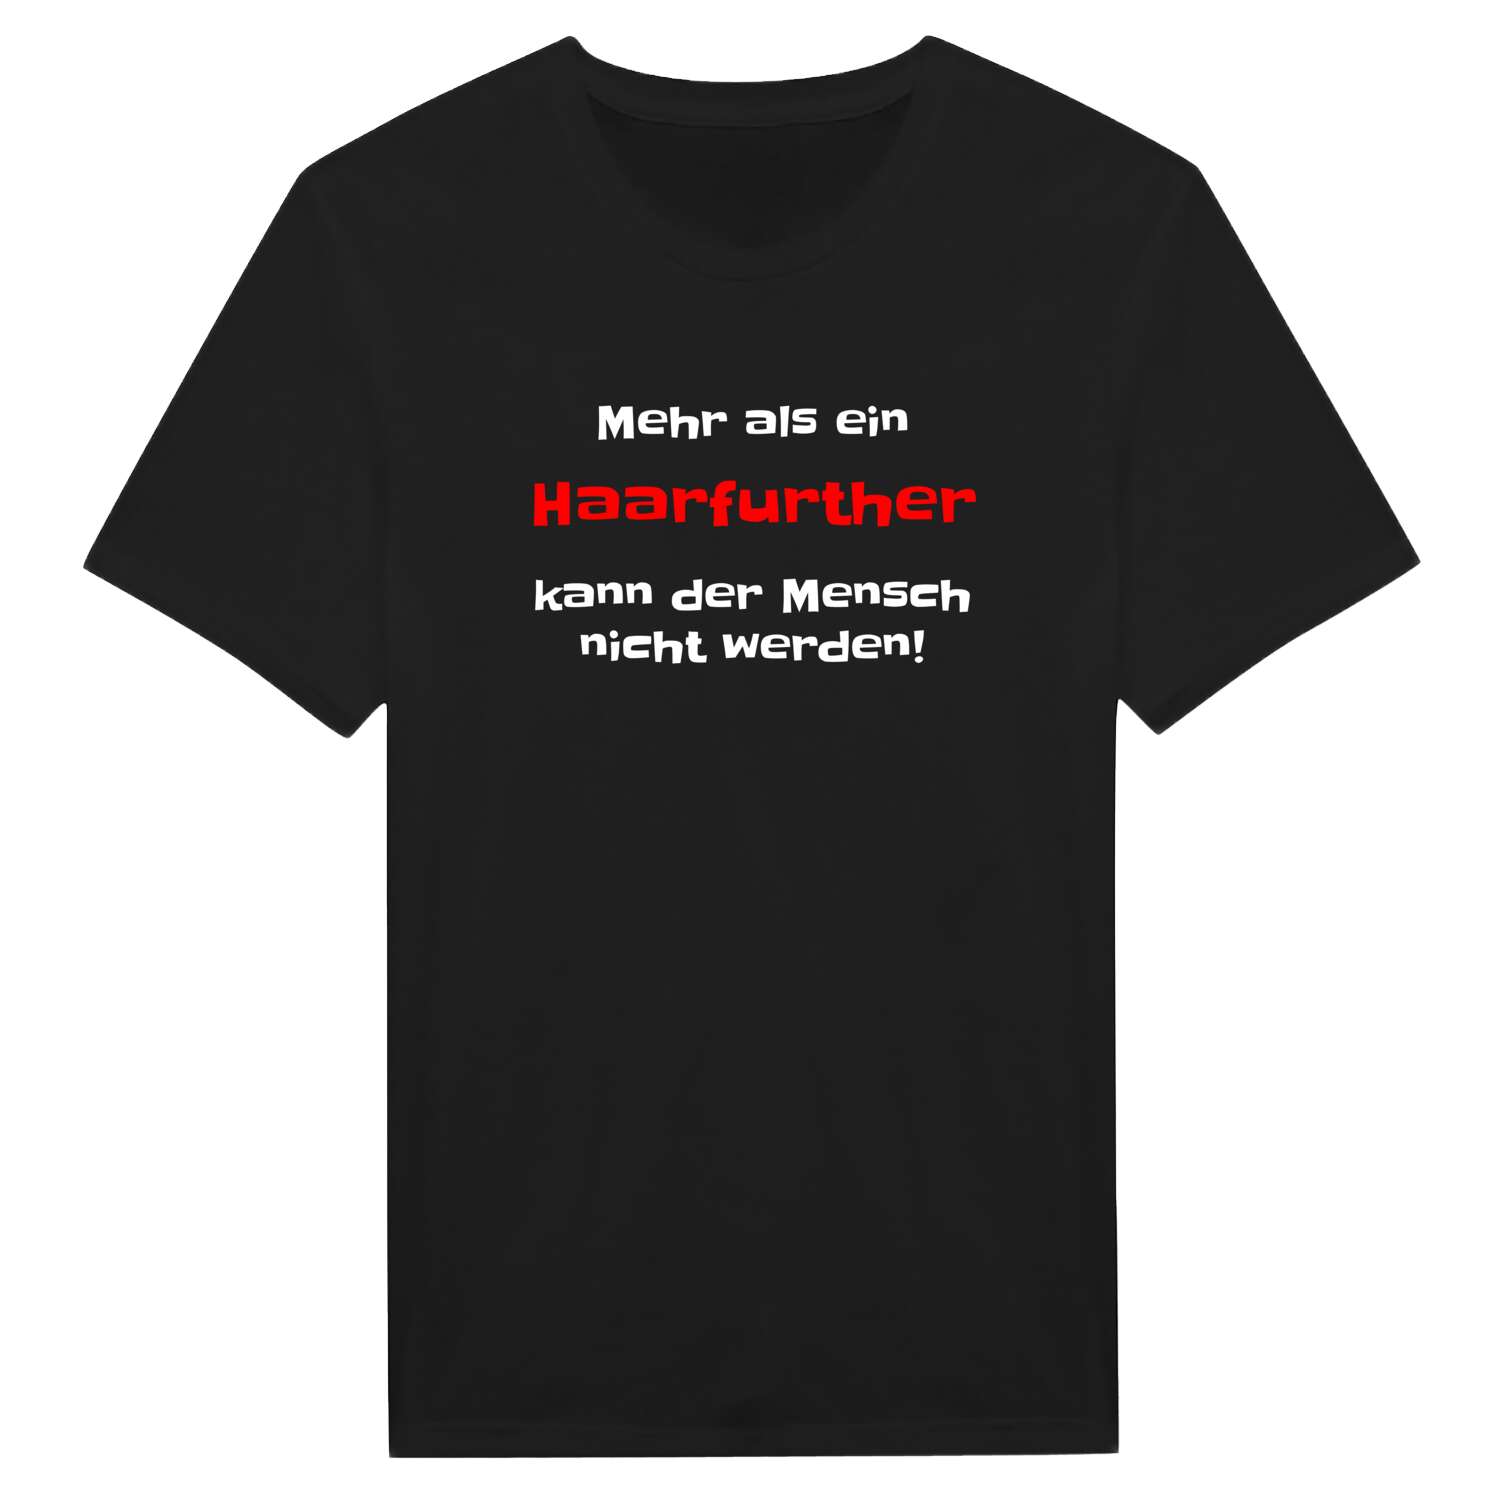 Haarfurth T-Shirt »Mehr als ein«